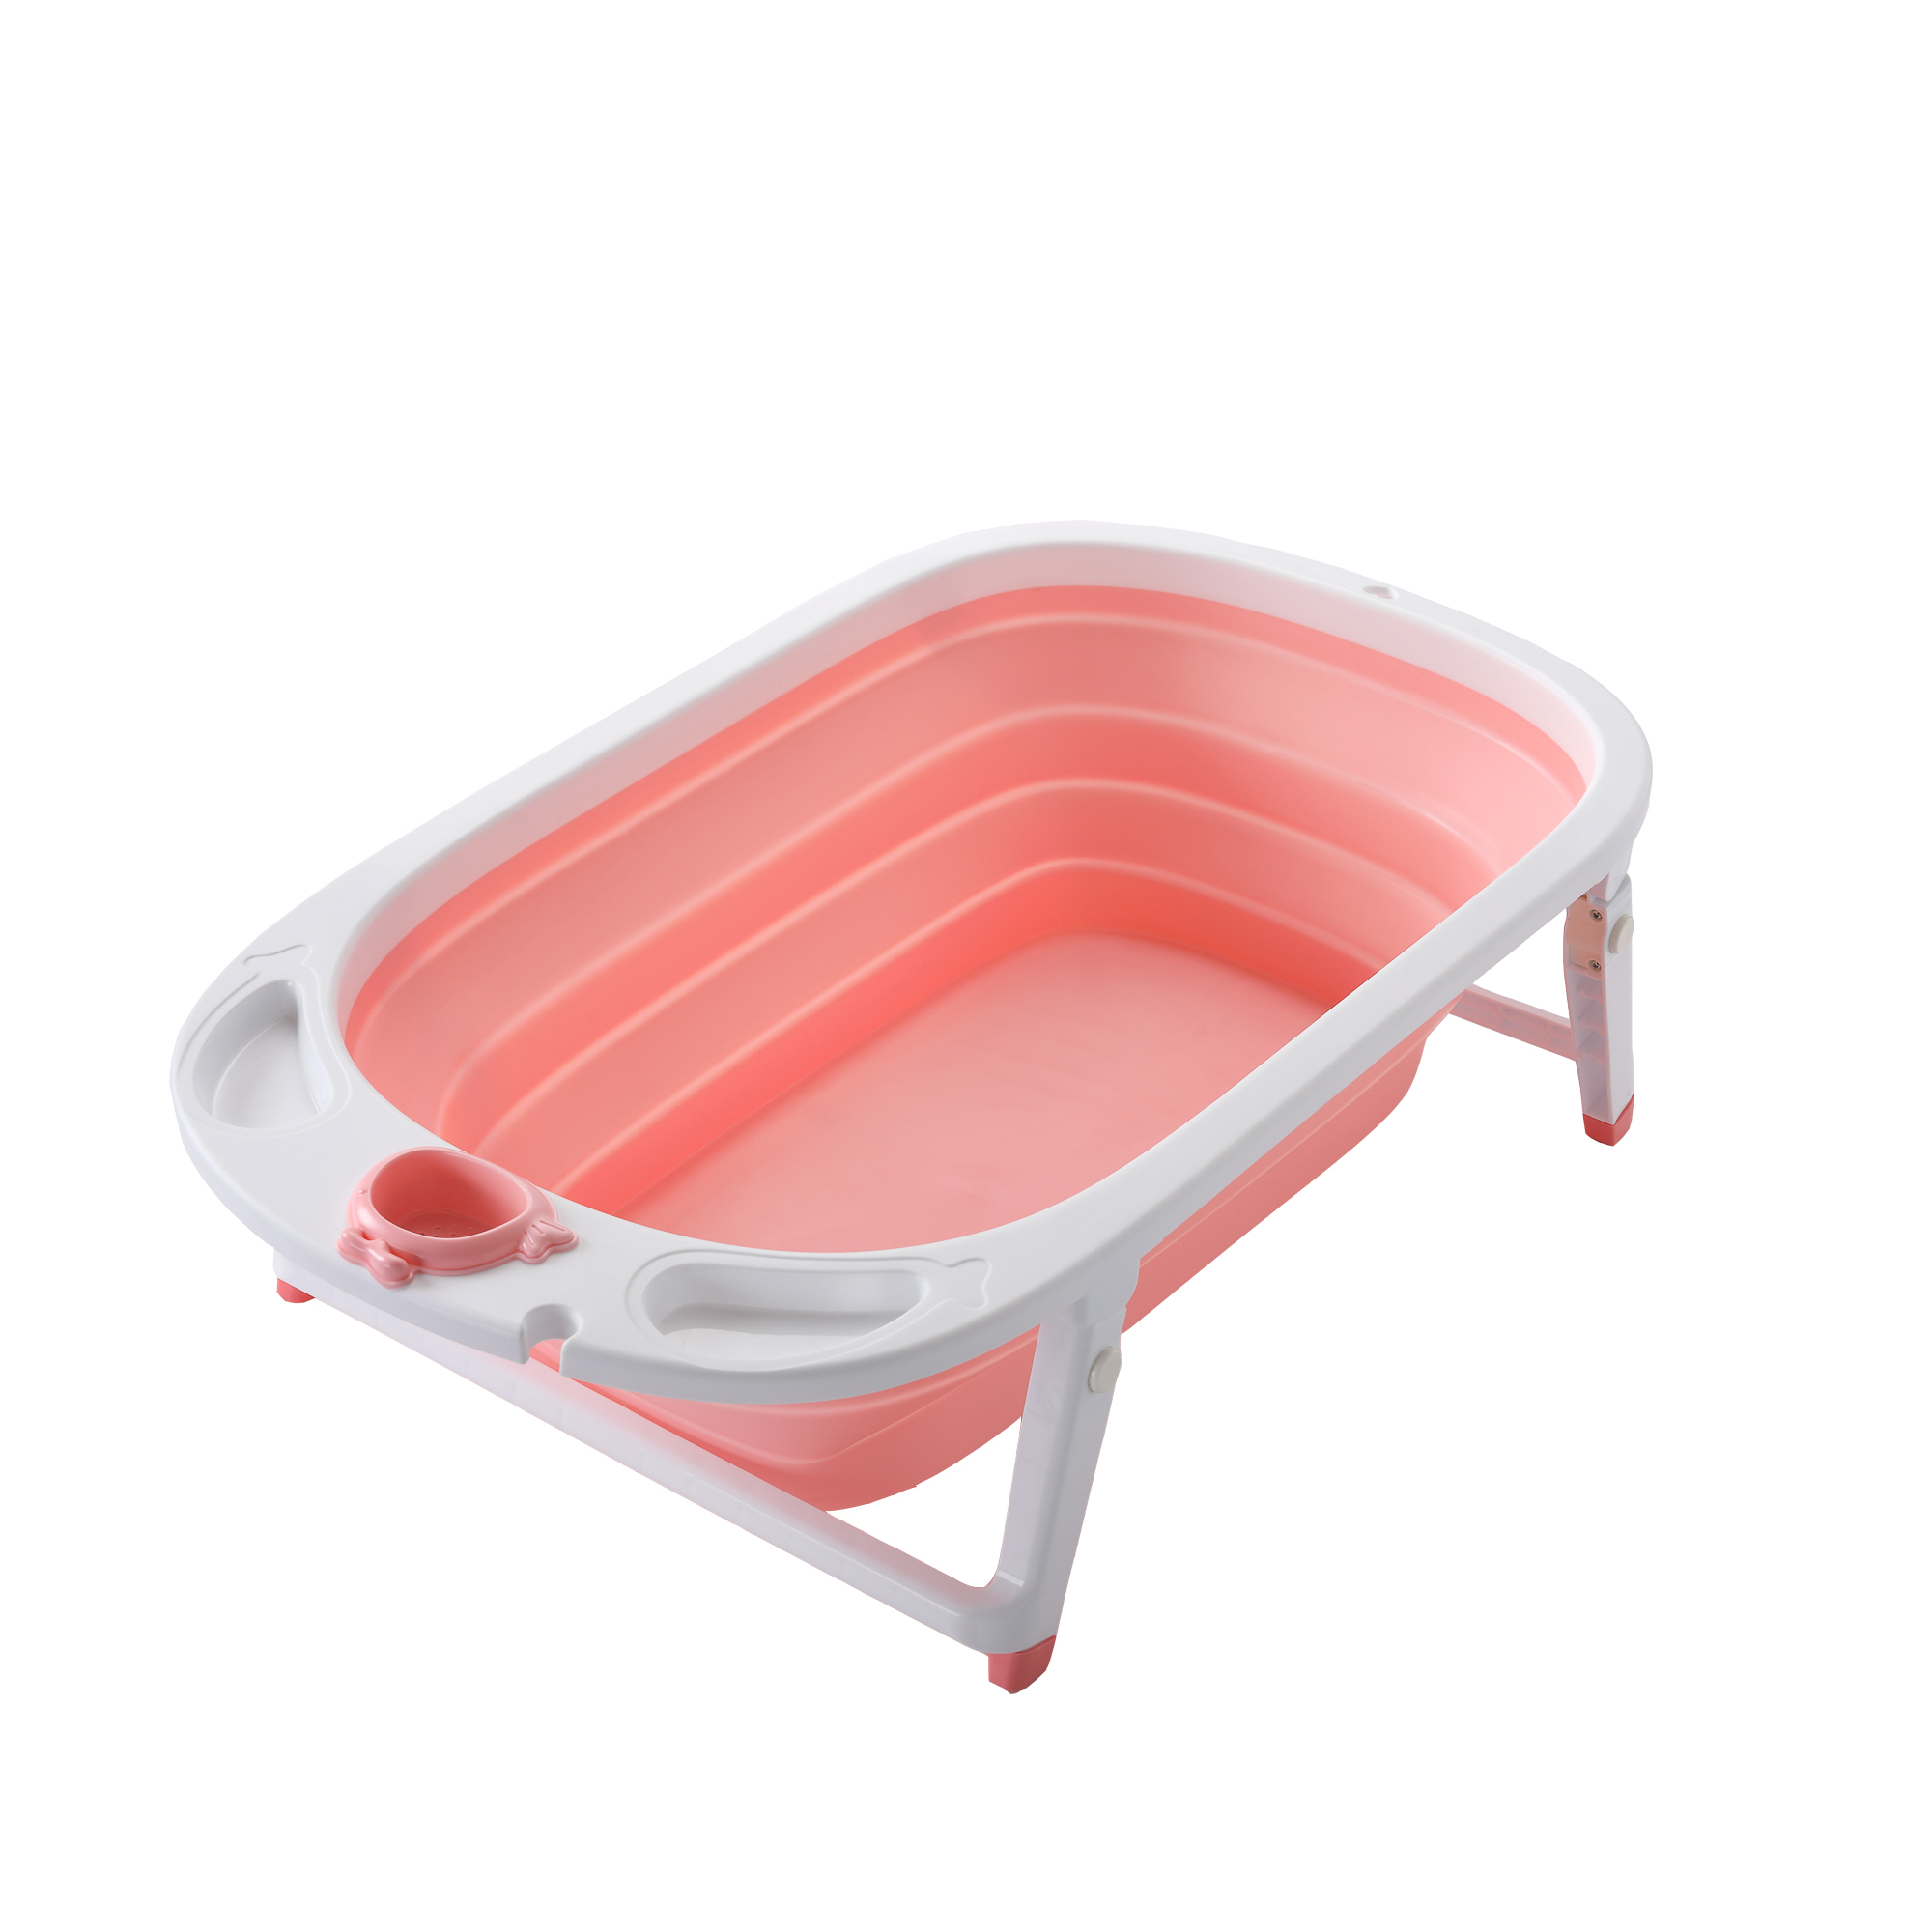 New style foldable baby bathtub/good folding baby bath tub with portable fold bathtub